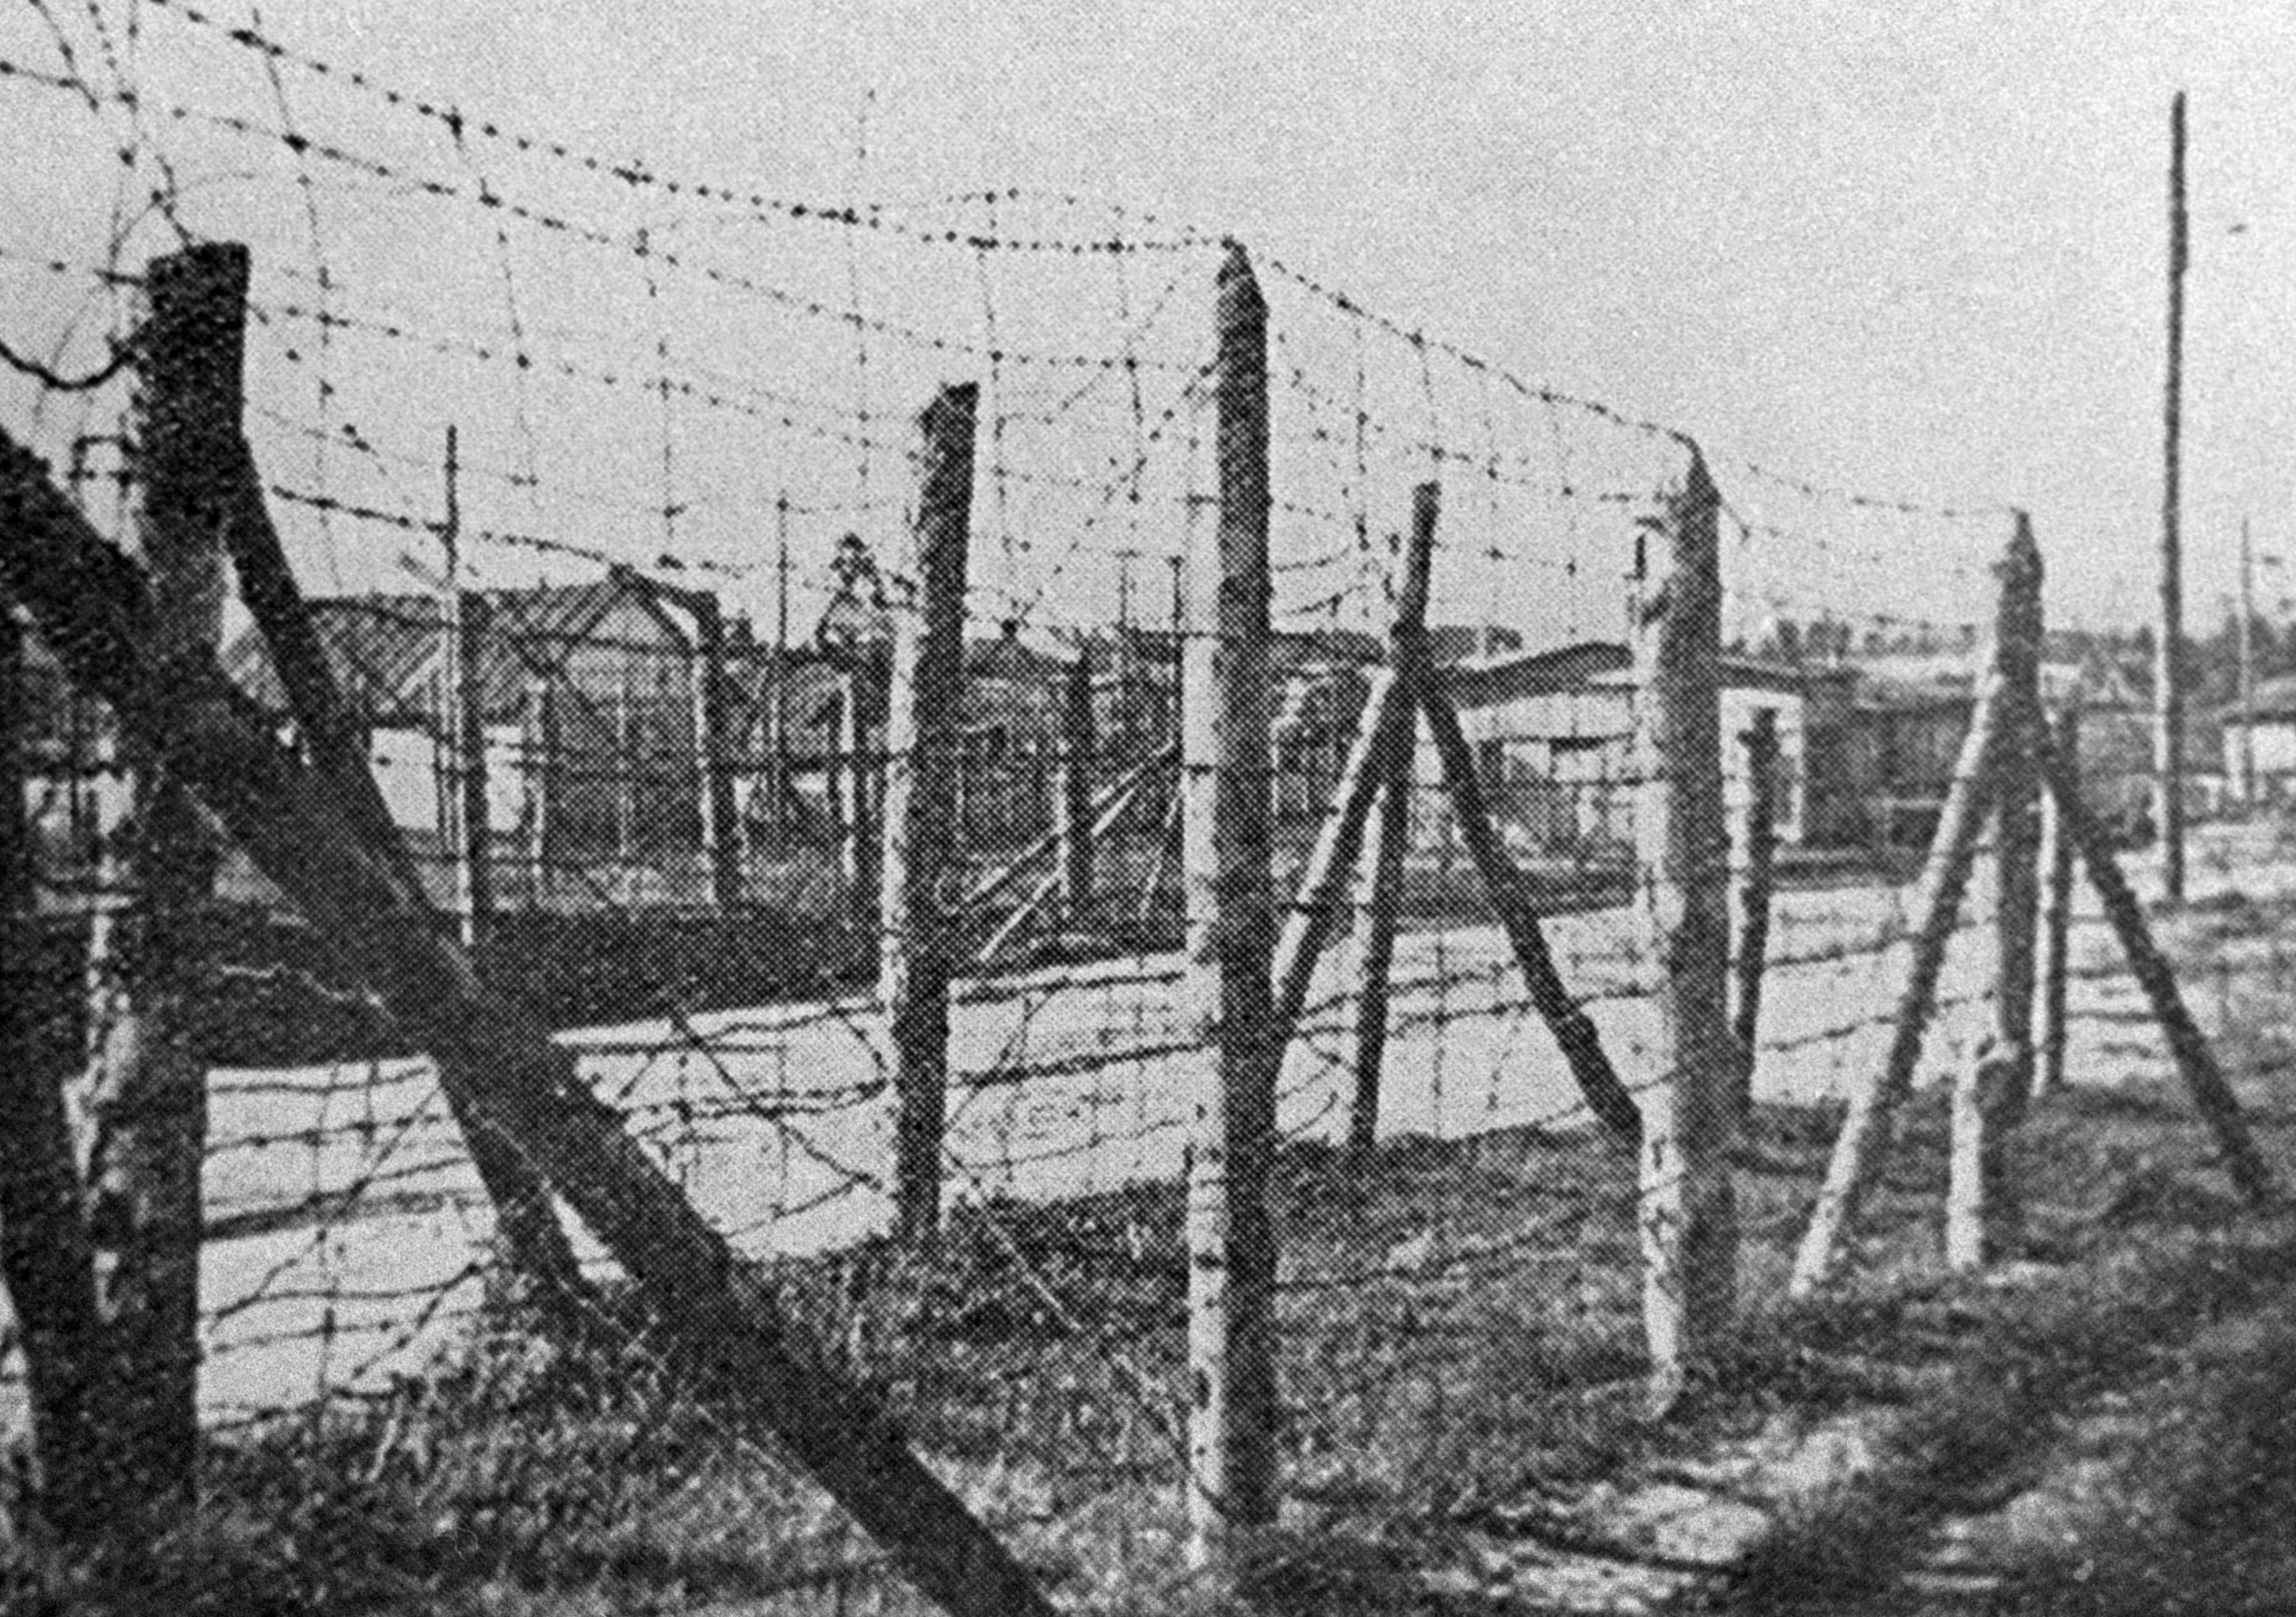 Концентрационный лагерь Саласпилс (концлагерь "Куртенгоф") на территории оккупированной нацистской Германией Латвии.